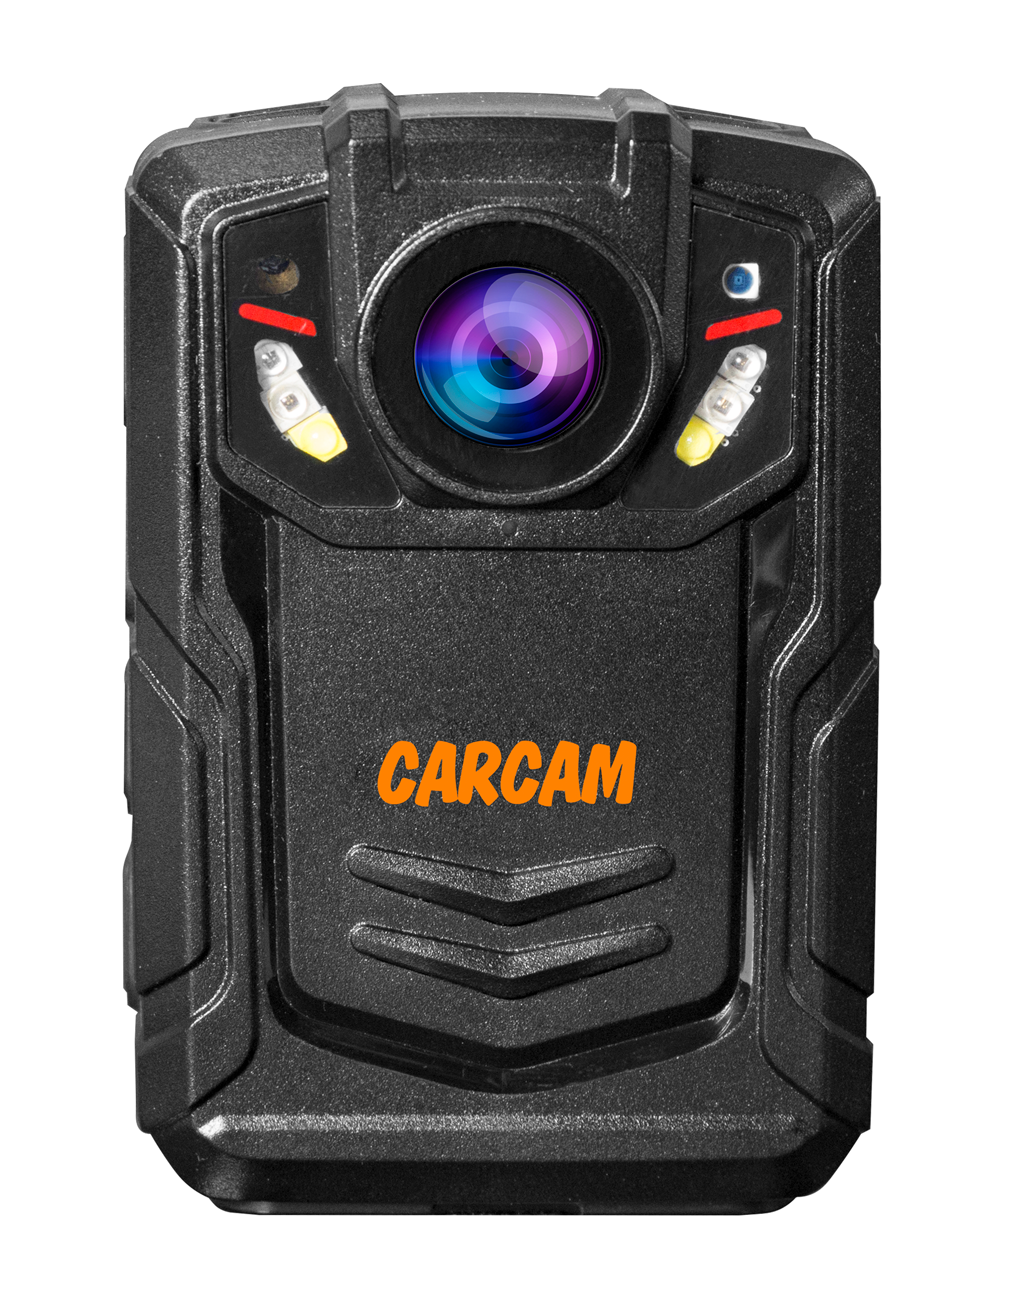 Персональный Quad HD видеорегистратор  CARCAM COMBAT 2S/4G 64GB персональный видеорегистратор carcam combat 2s pro 256gb